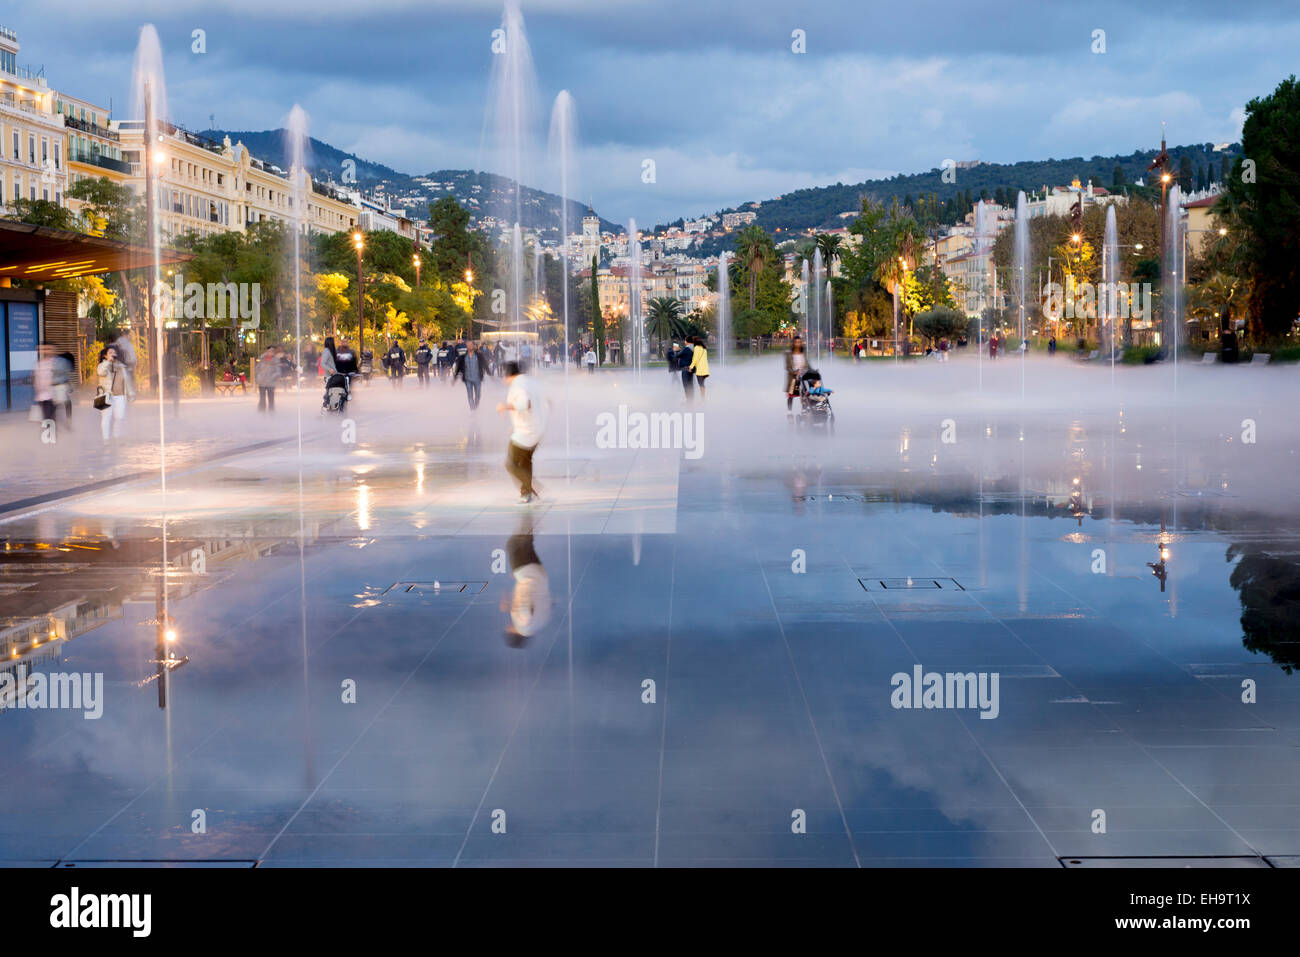 Direkt neben der Altstadt ist eine große restaurierte Fläche mit Brunnen und Nebel Spielfläche, Place Massena, Nizza, Frankreich Stockfoto